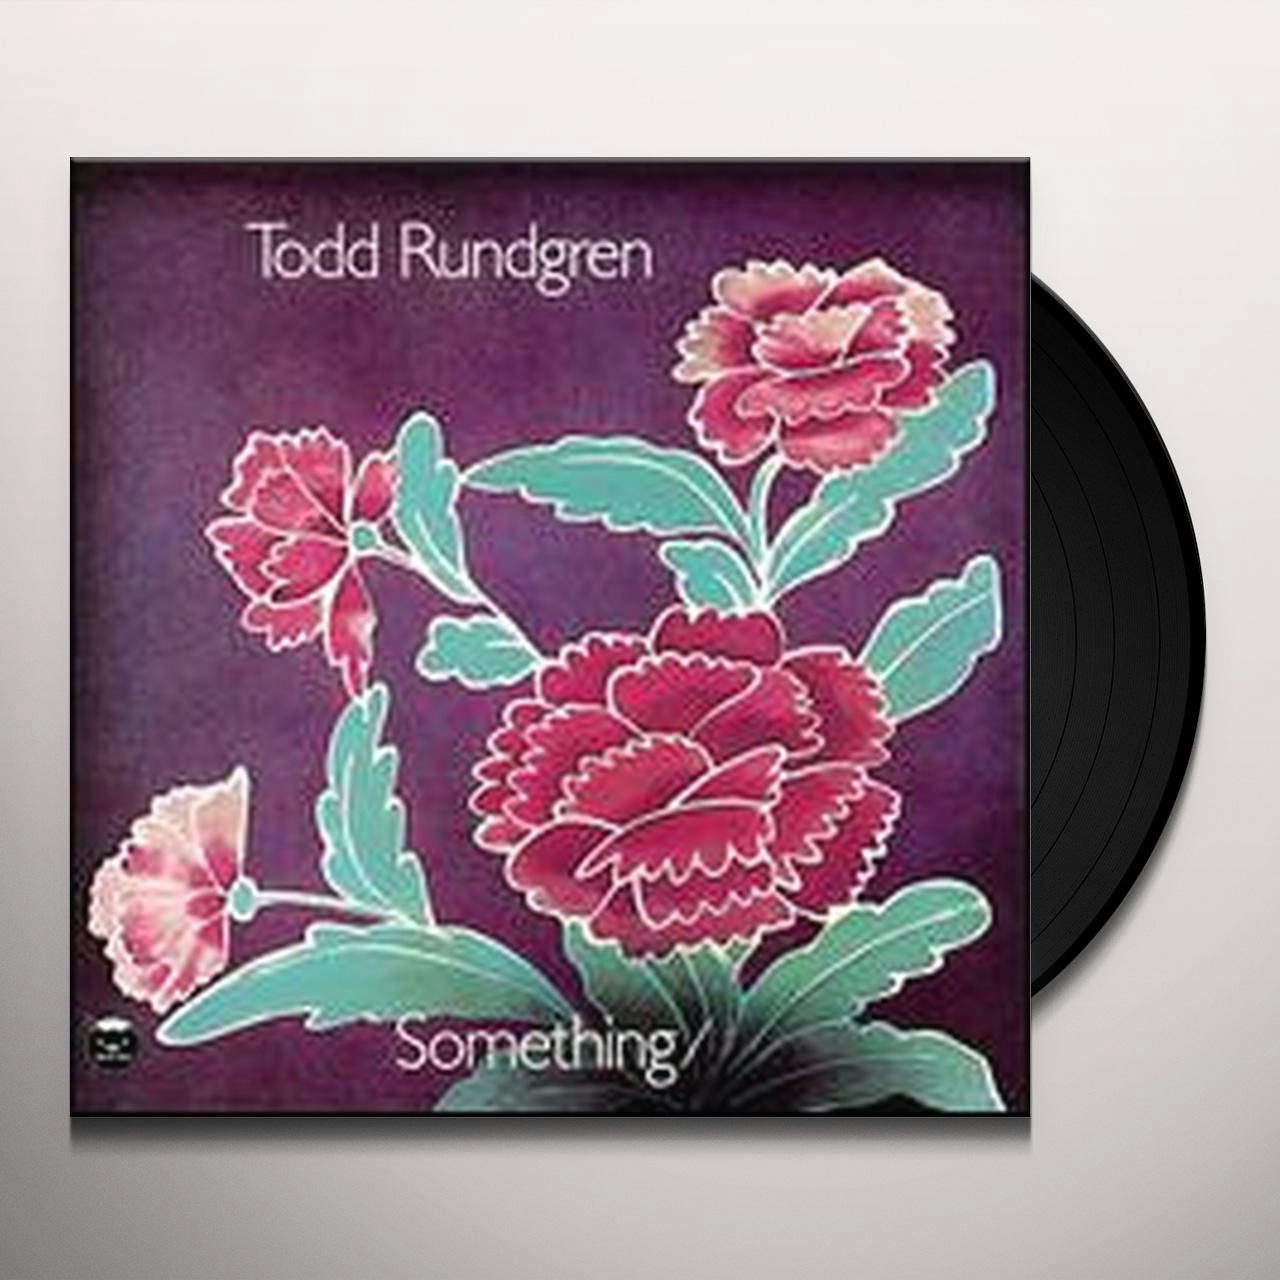 SOMETHING / ANYTHING Vinyl Record - Todd Rundgren